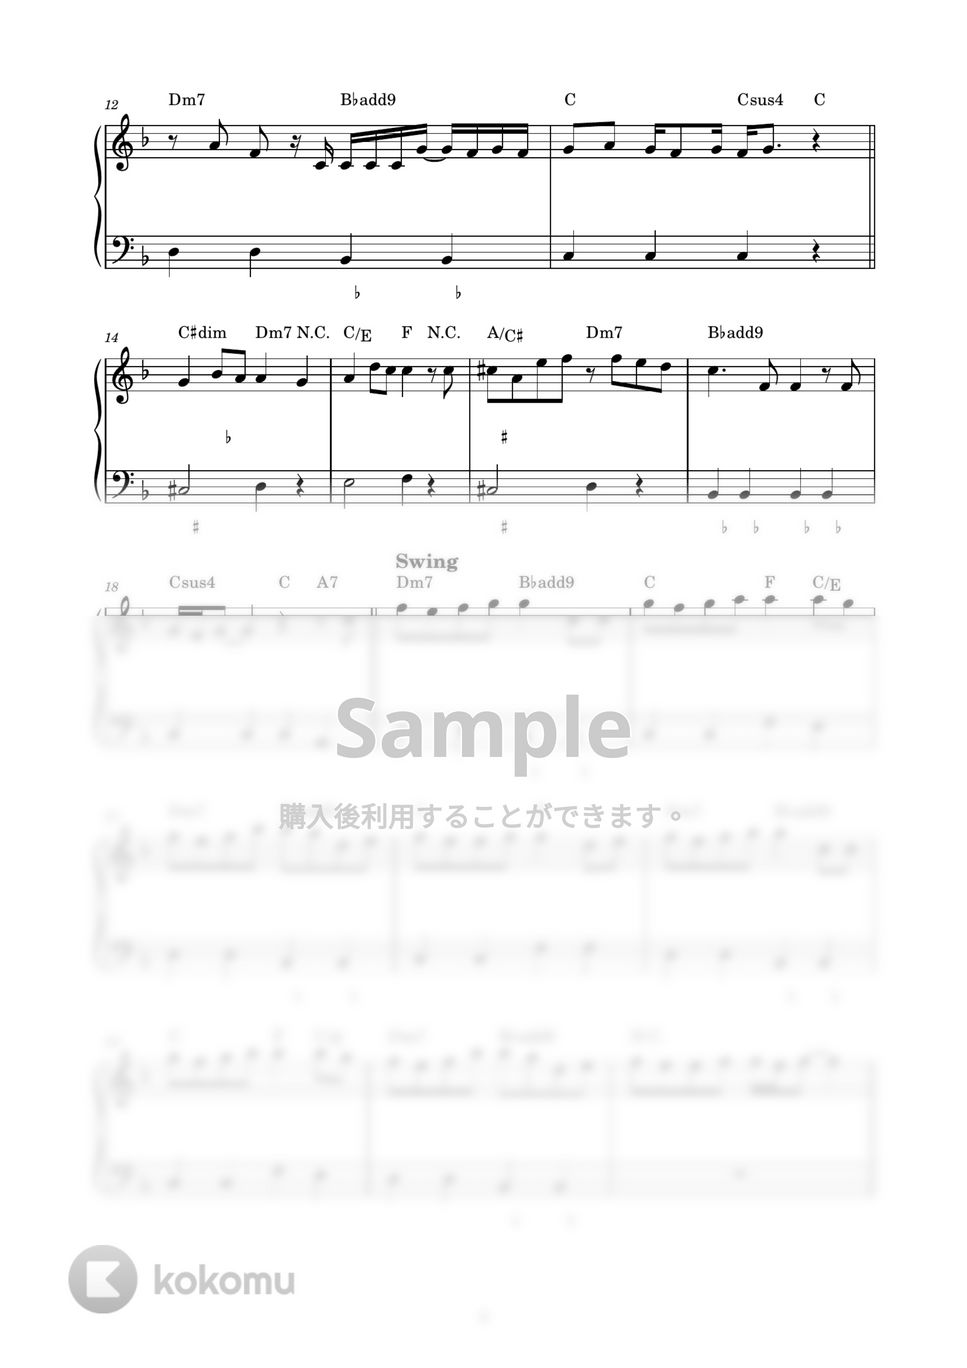 優里 - レオ (ピアノ楽譜 / かんたん両手 / 歌詞付き / ドレミ付き / 初心者向き) by piano.tokyo